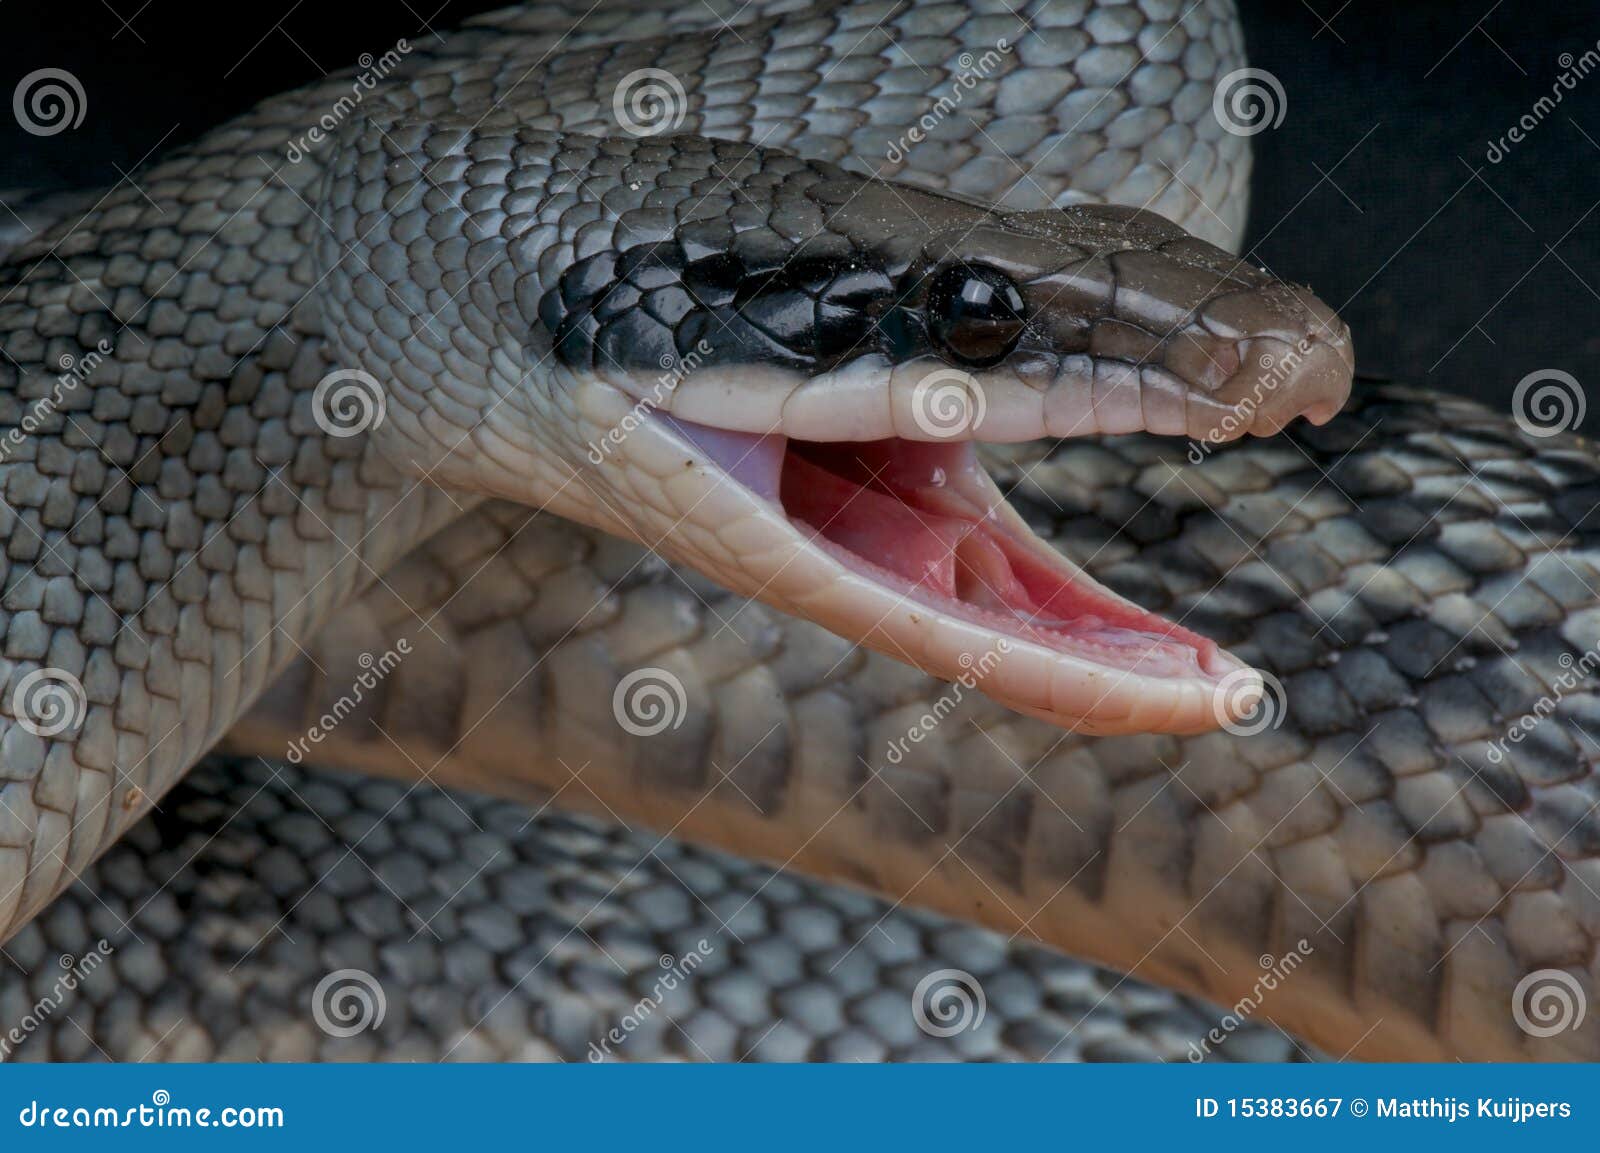 attacking rat snake